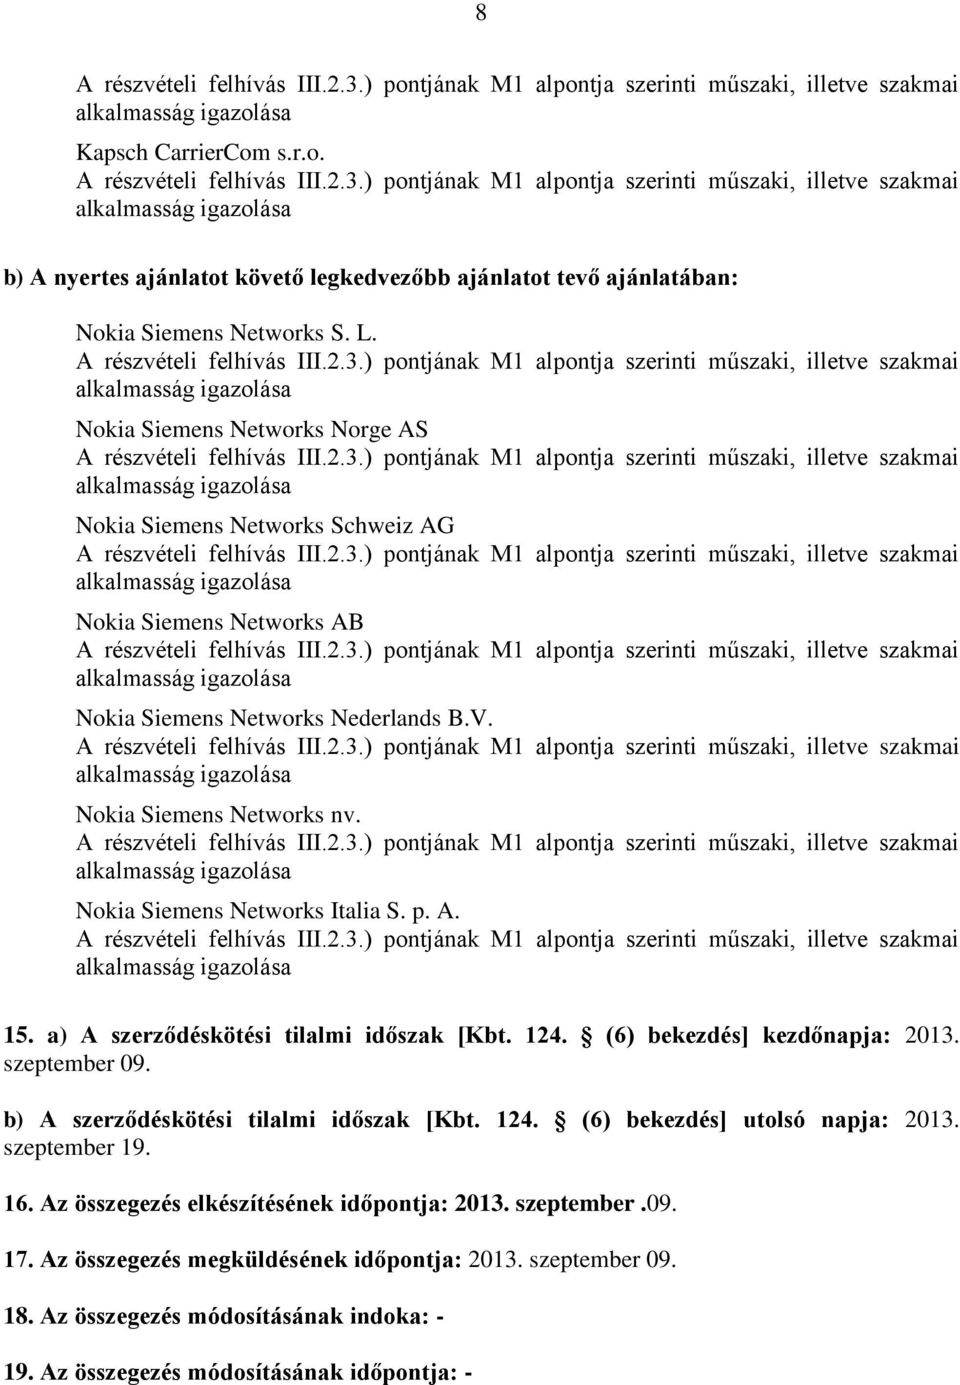 Nokia Siemens Networks Italia S. p. A. 15. a) A szerződéskötési tilalmi időszak [Kbt. 124. (6) bekezdés] kezdőnapja: 2013. szeptember 09. b) A szerződéskötési tilalmi időszak [Kbt.